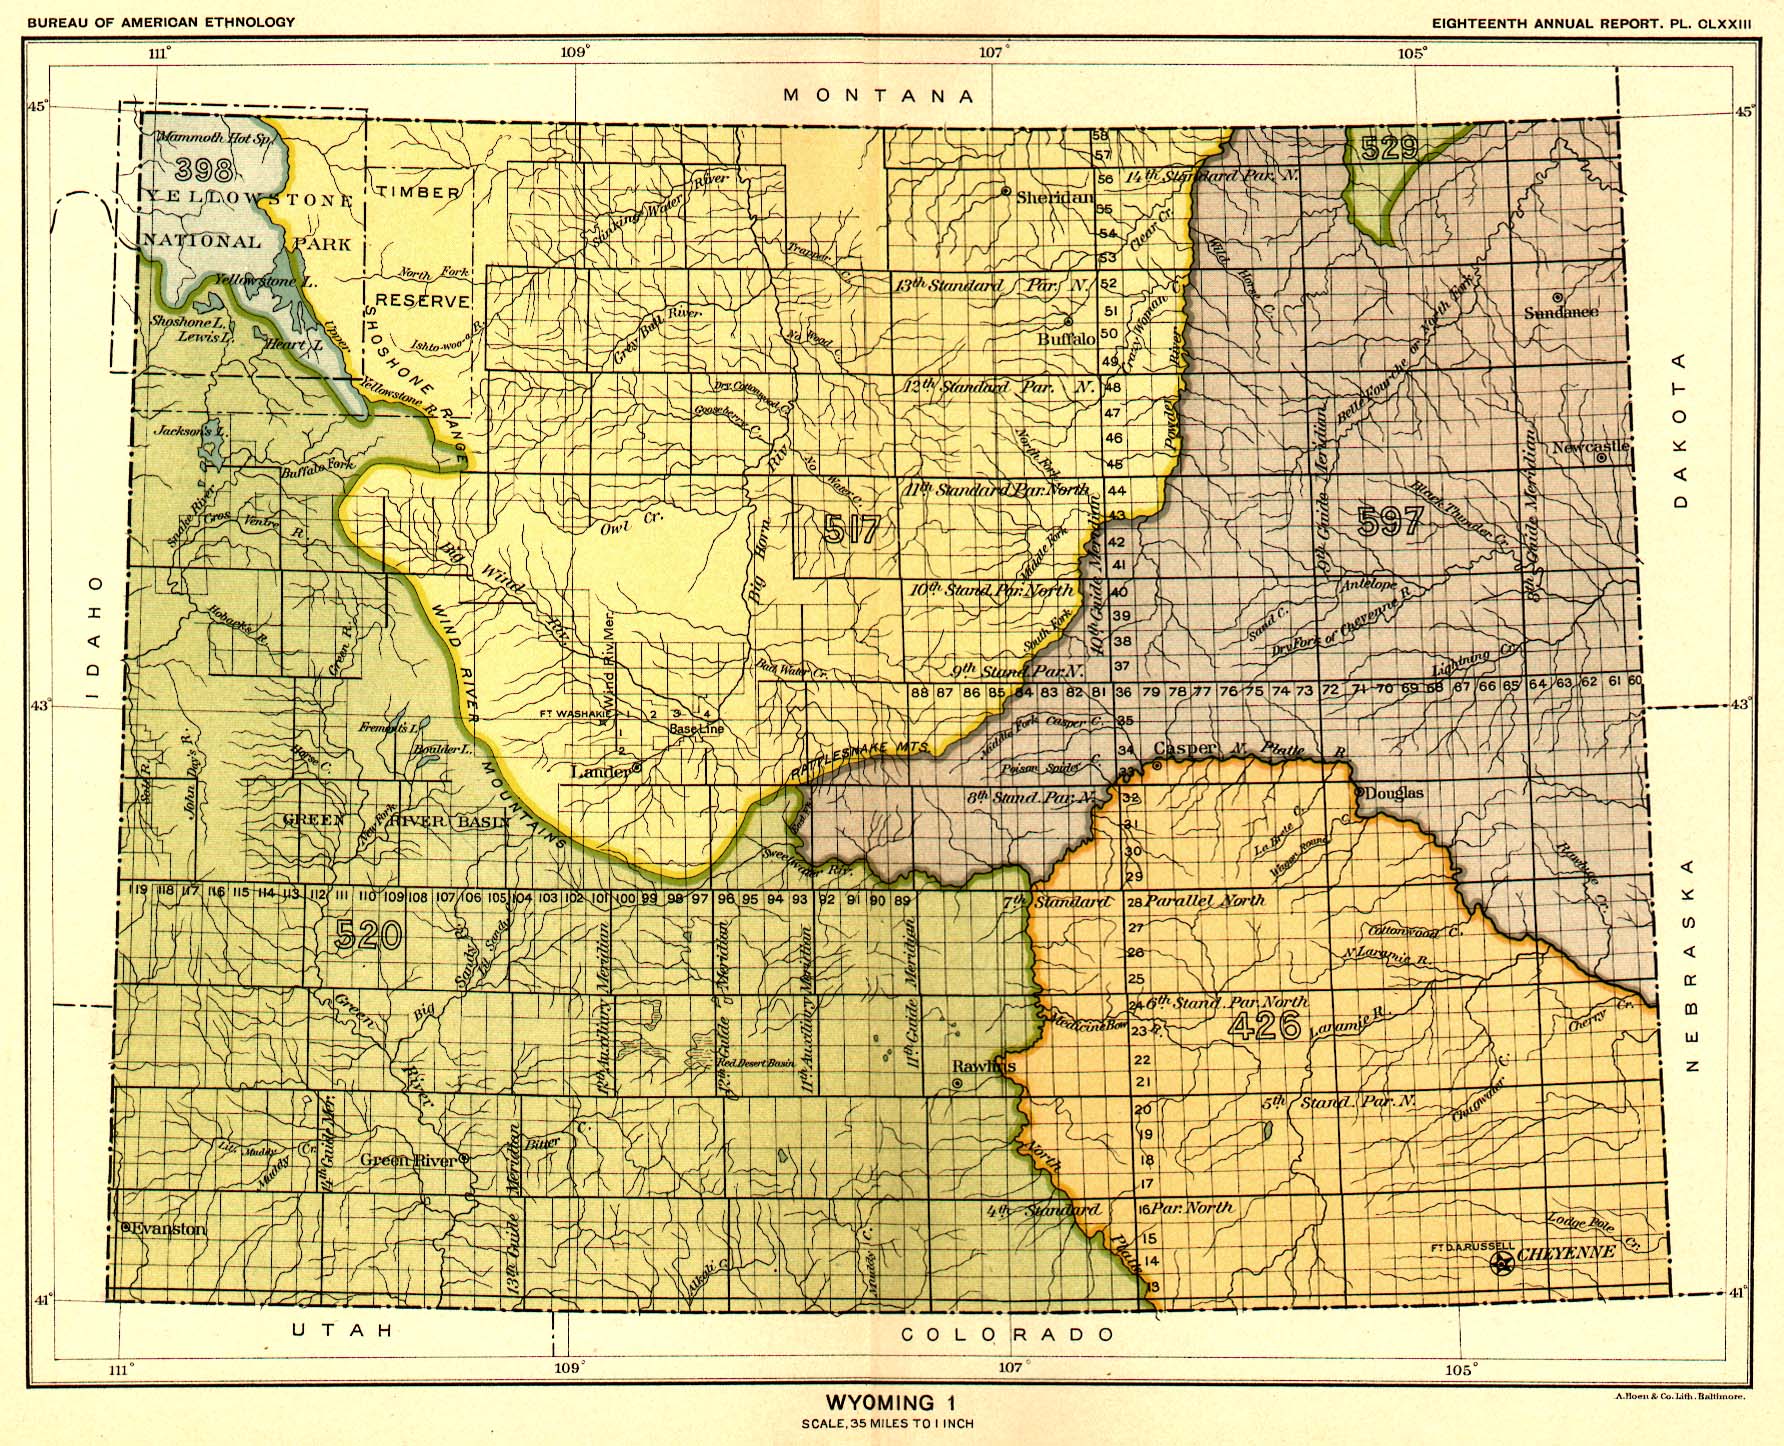 Wyoming 1, Map 66